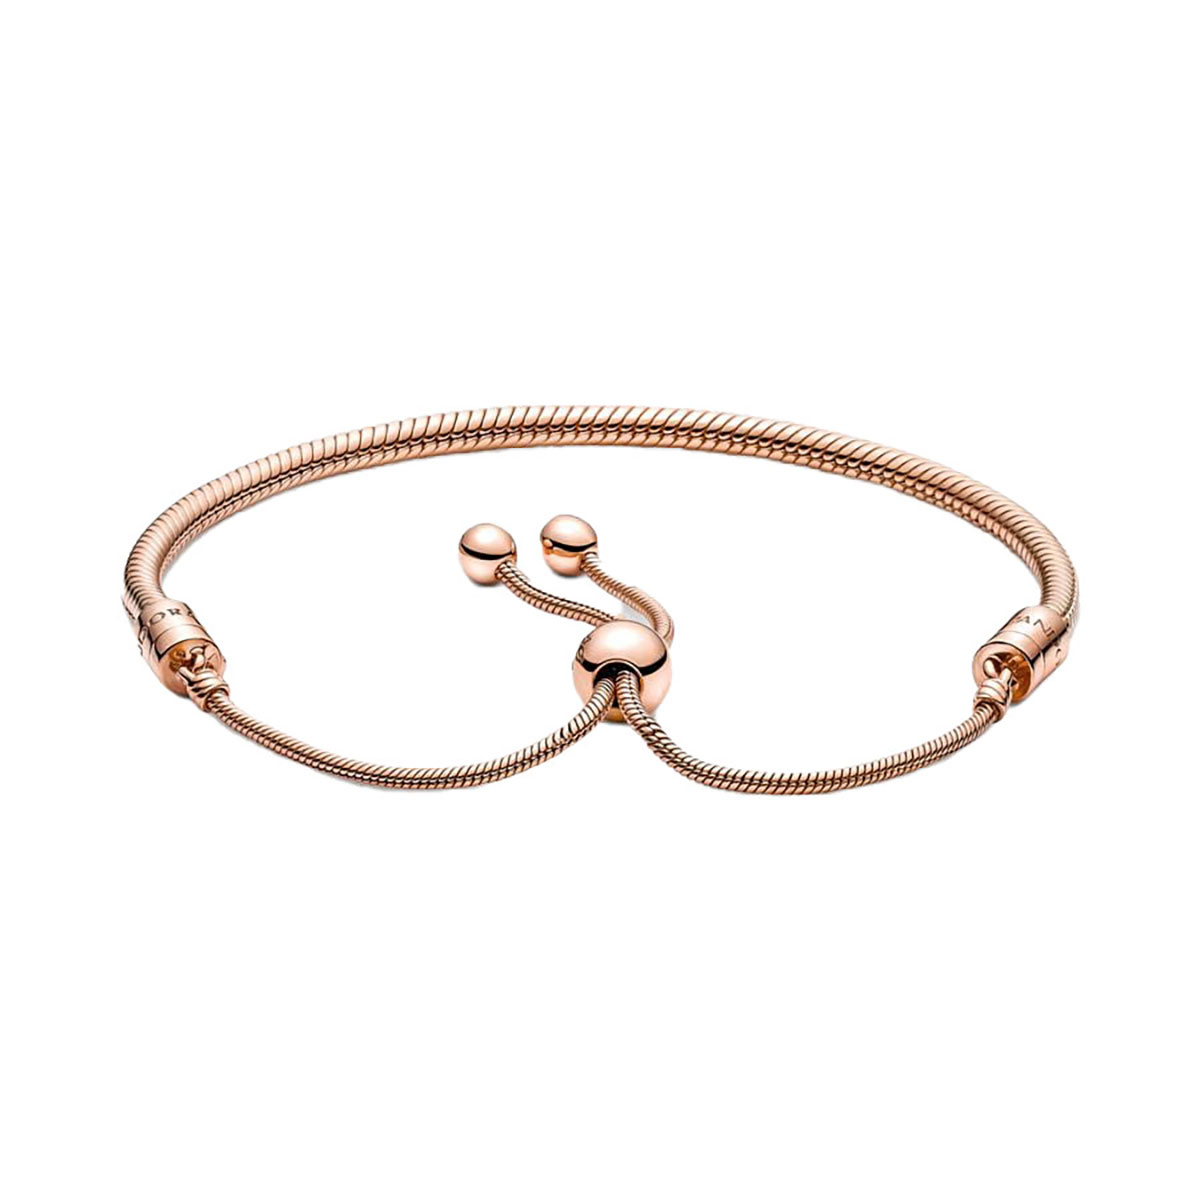 Snake chain 14k rose gold-plated bracelet gift set